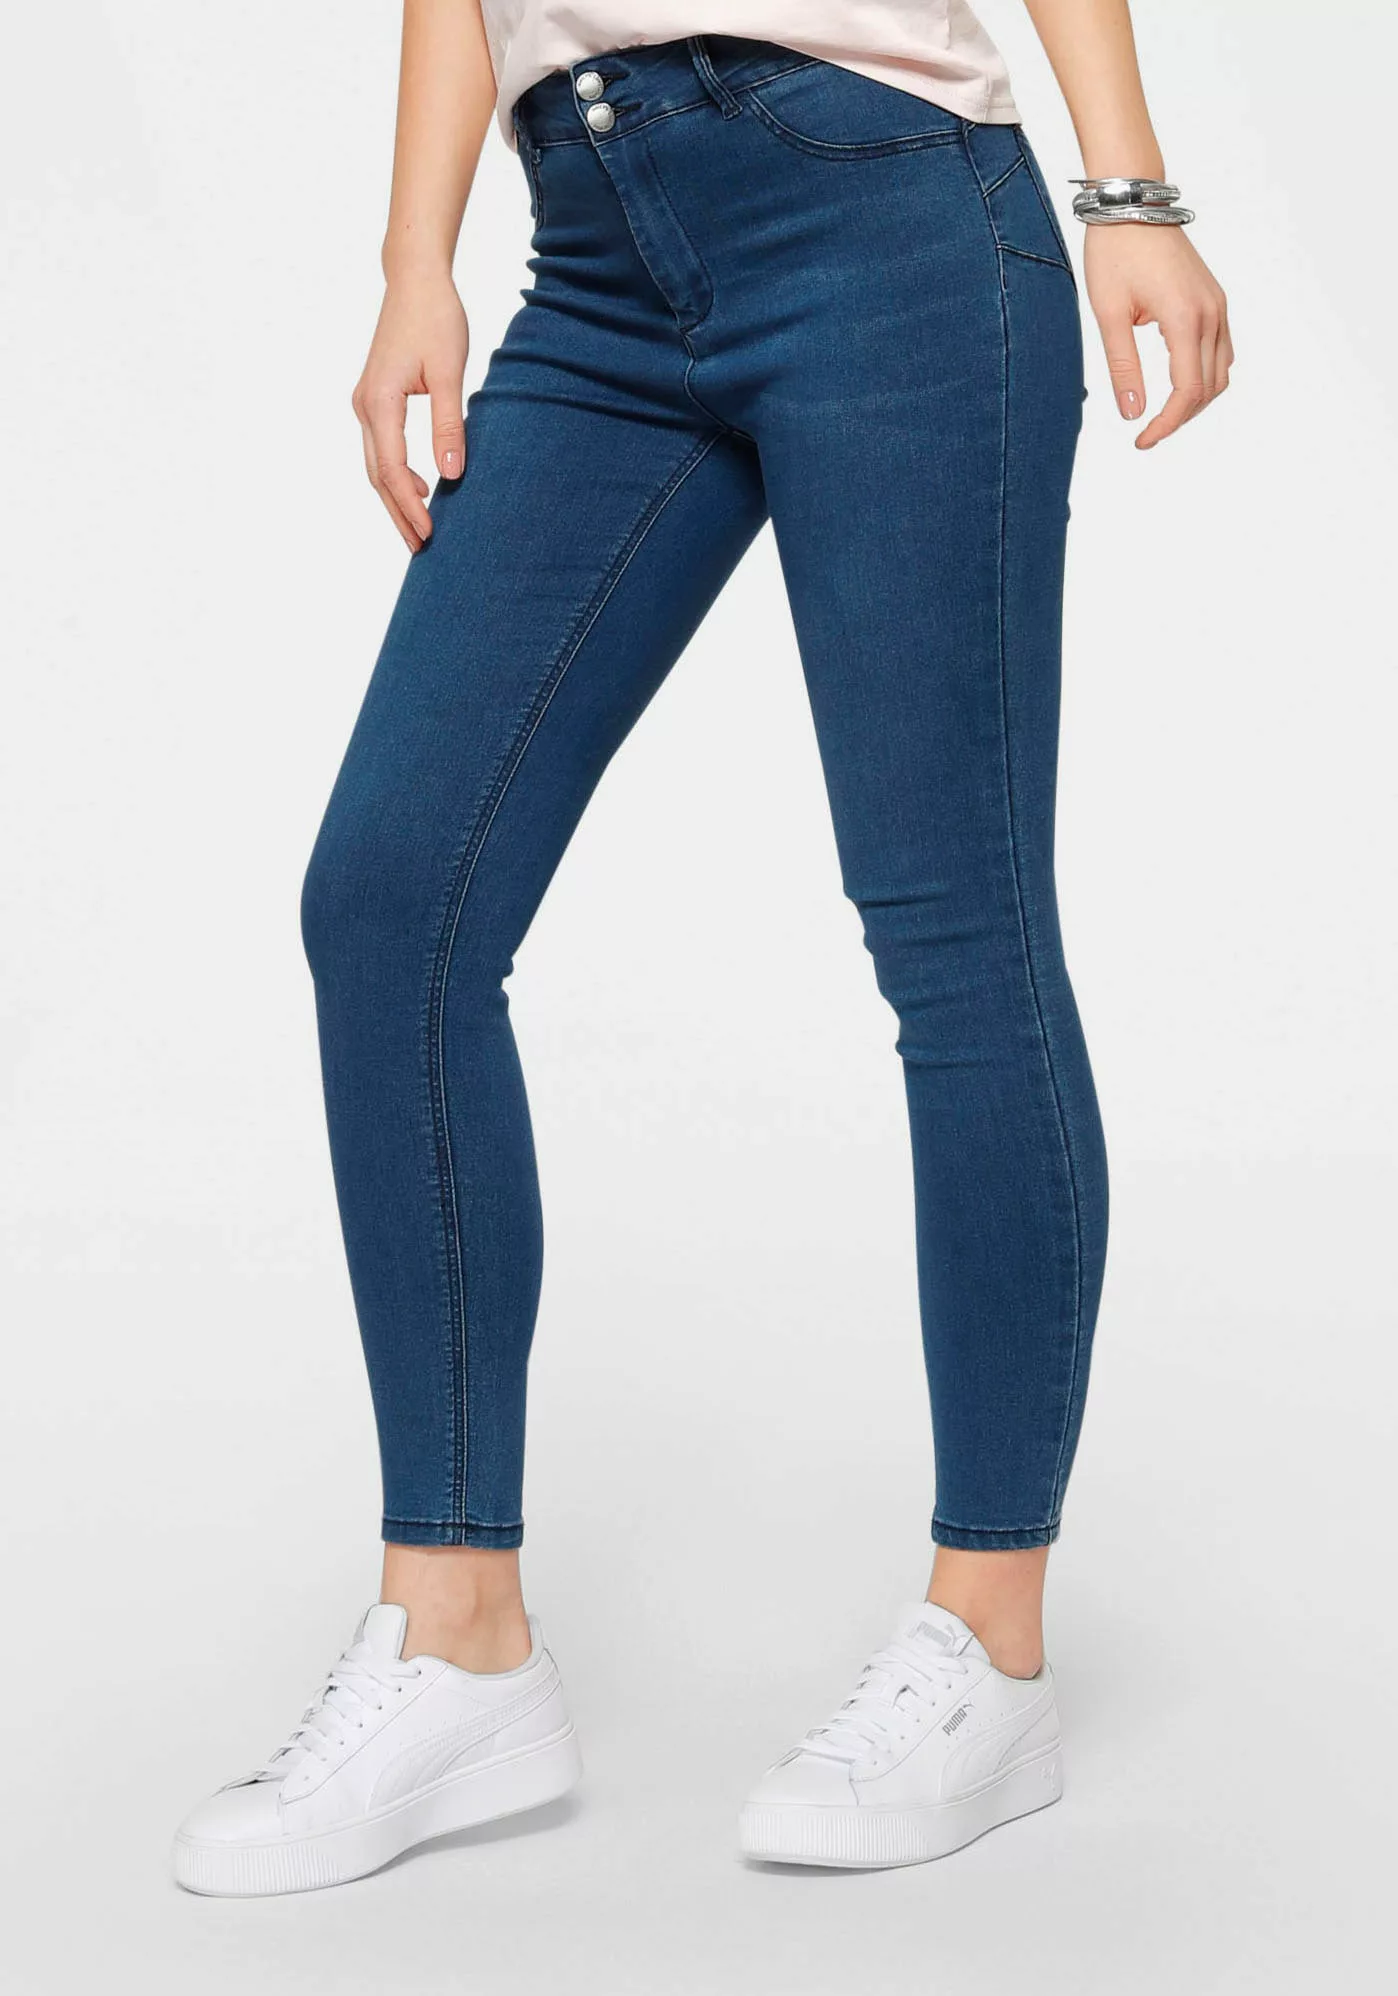 HaILY’S Push-up-Jeans "PUSH" günstig online kaufen